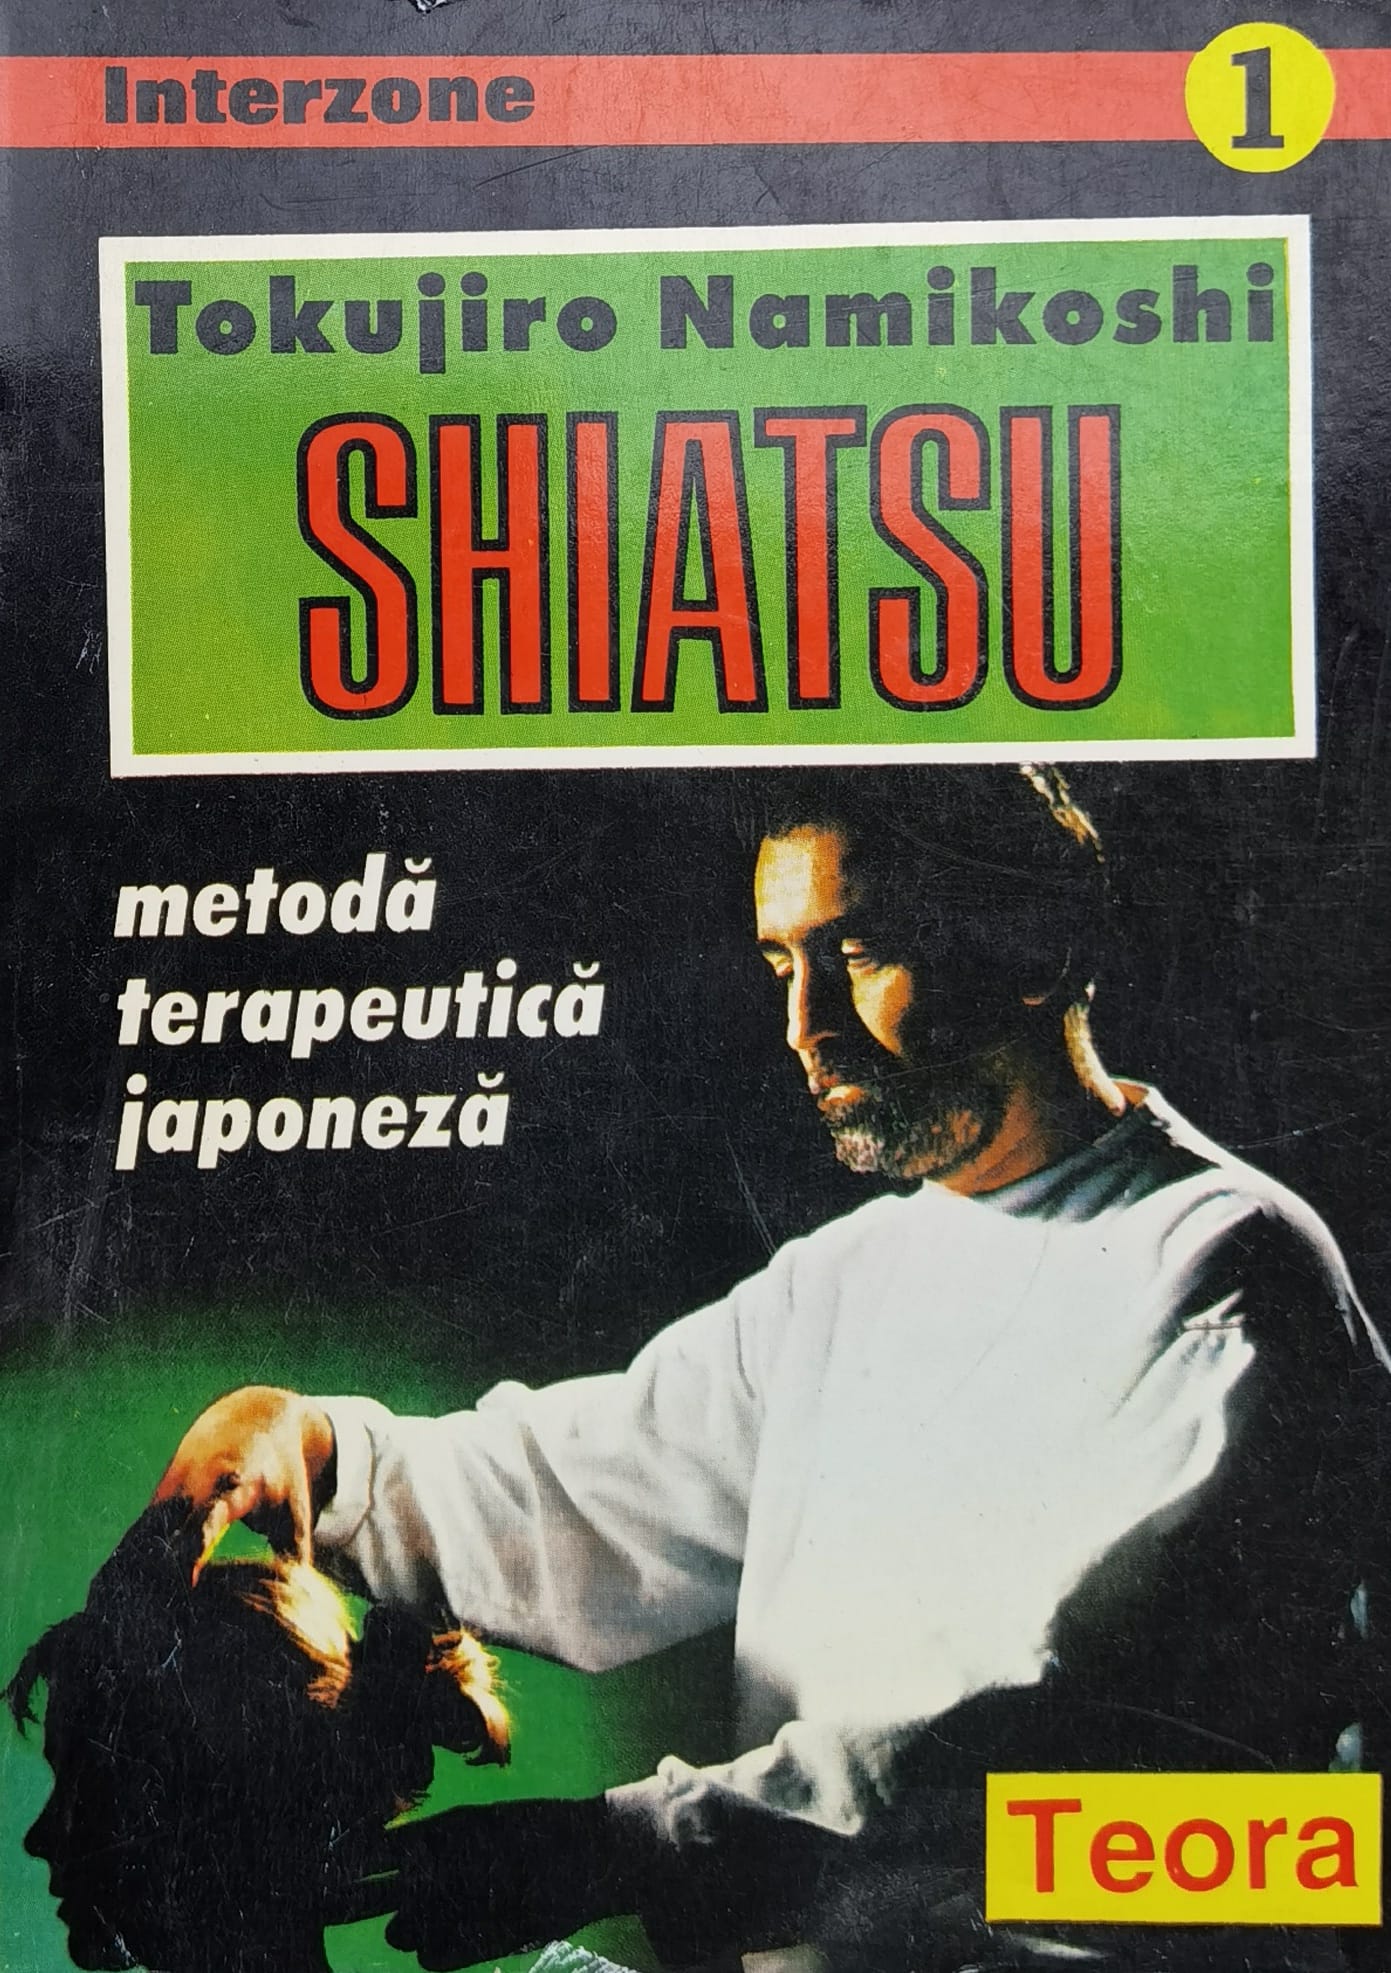 shiatsu metoda terapeutica japoneza                                                                  tokujiro namikoshi                                                                                  